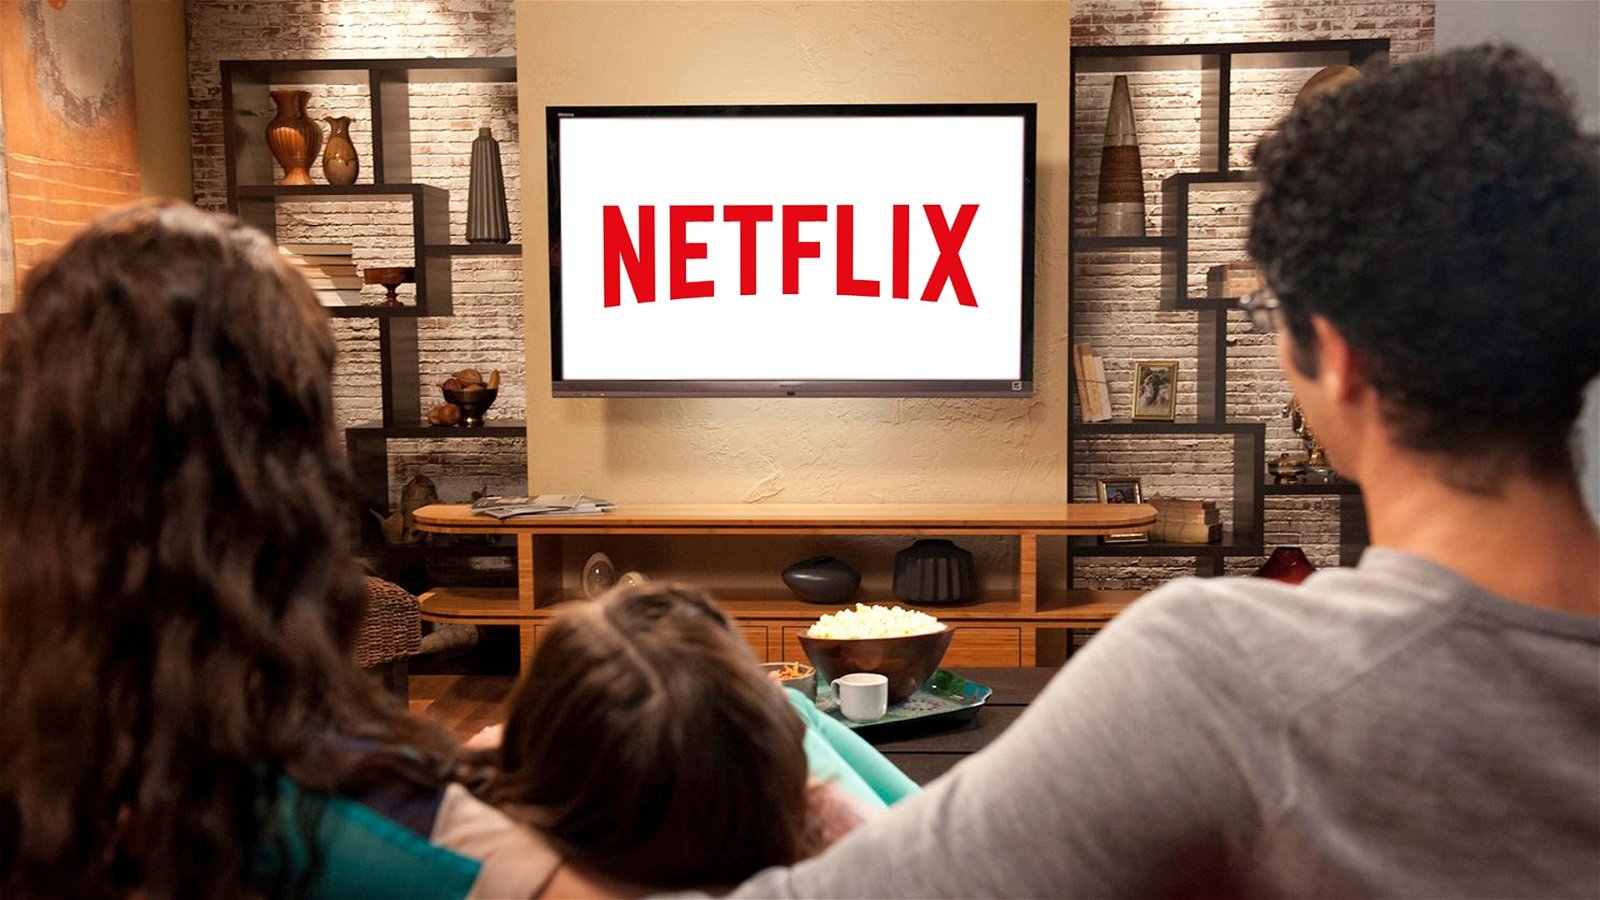 Estrenos de Netflix en España de series y películas en septiembre de 2018